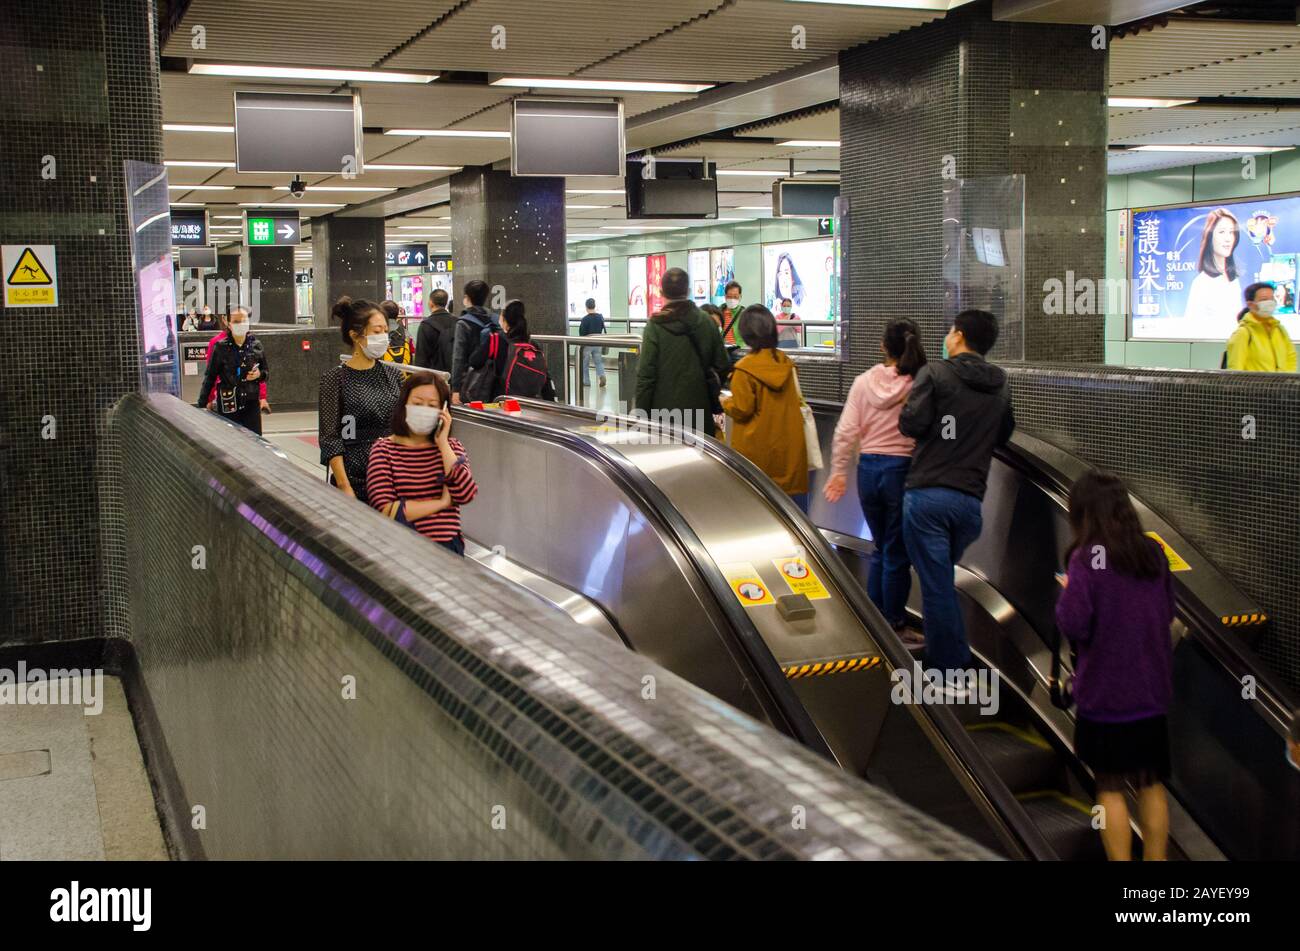 Les personnes et les travailleurs qui portent des masques de visage dans le Metro Mass Transit Railway de Hong Kong lors de la nouvelle éclosion de coronavirus Covid-19 en février 2020 Banque D'Images